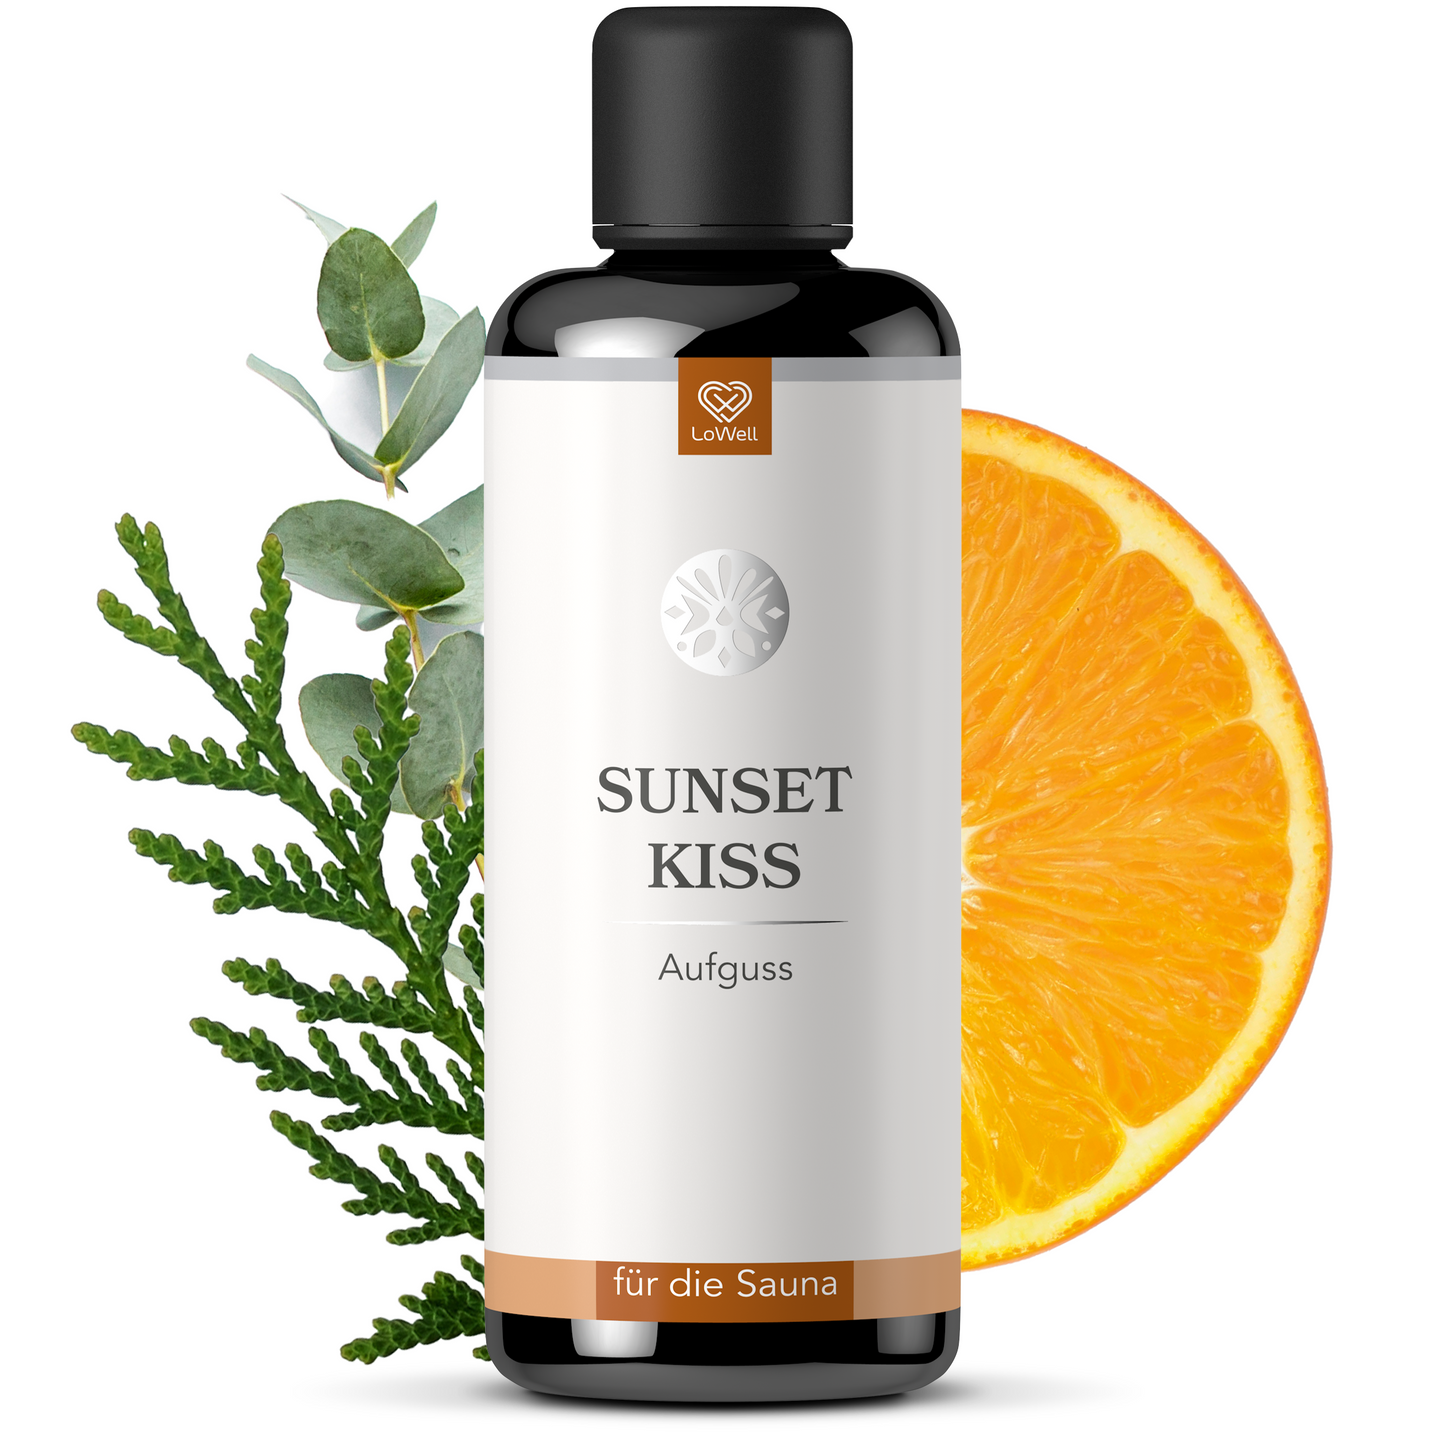 Saunaaufguss - Sunset Kiss - Zeder, Eukalyptus und Orange - 100ml